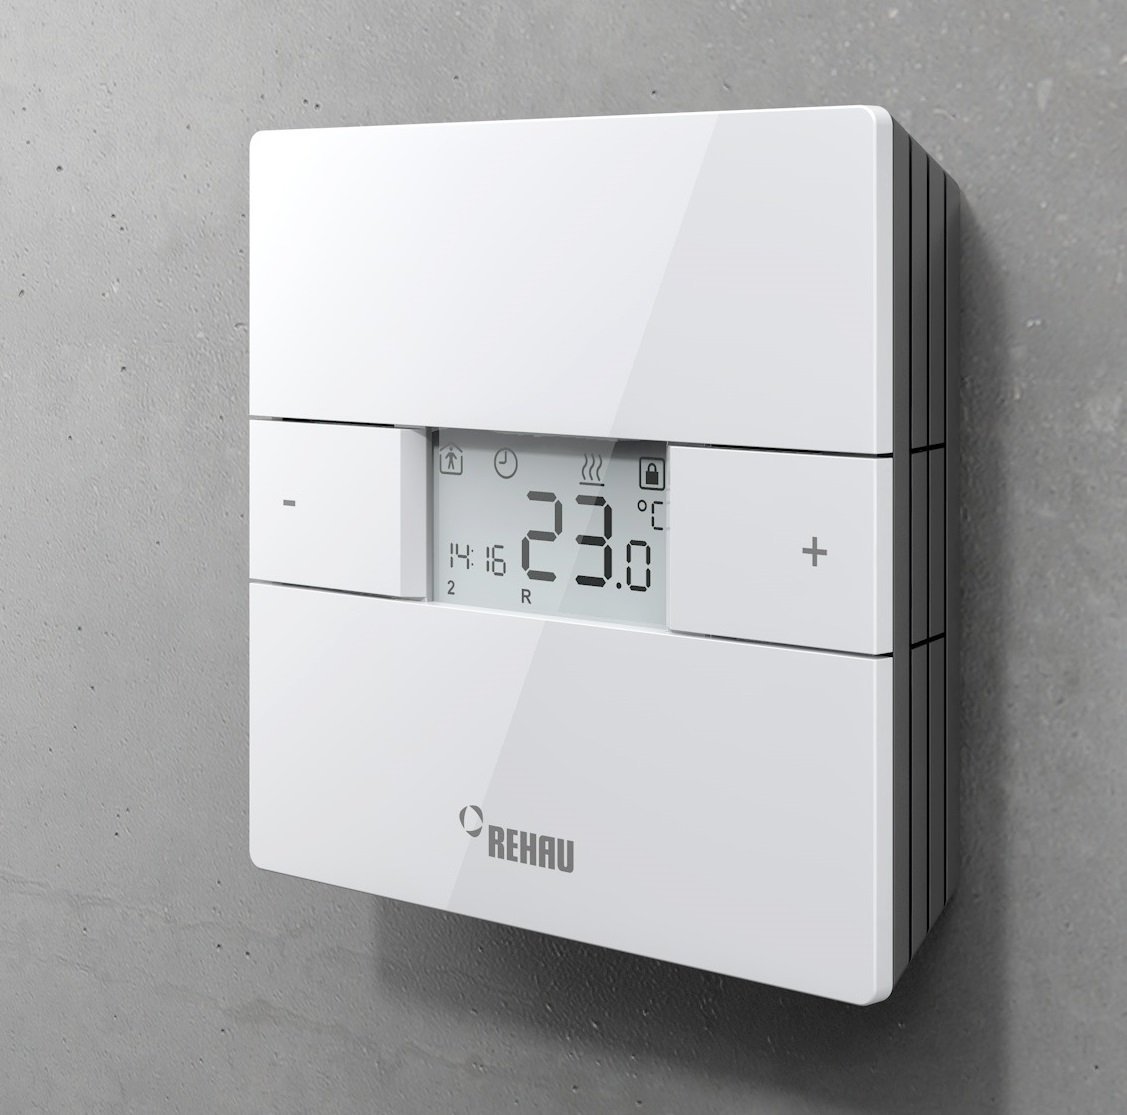 yerden ısıtma oda termostatı